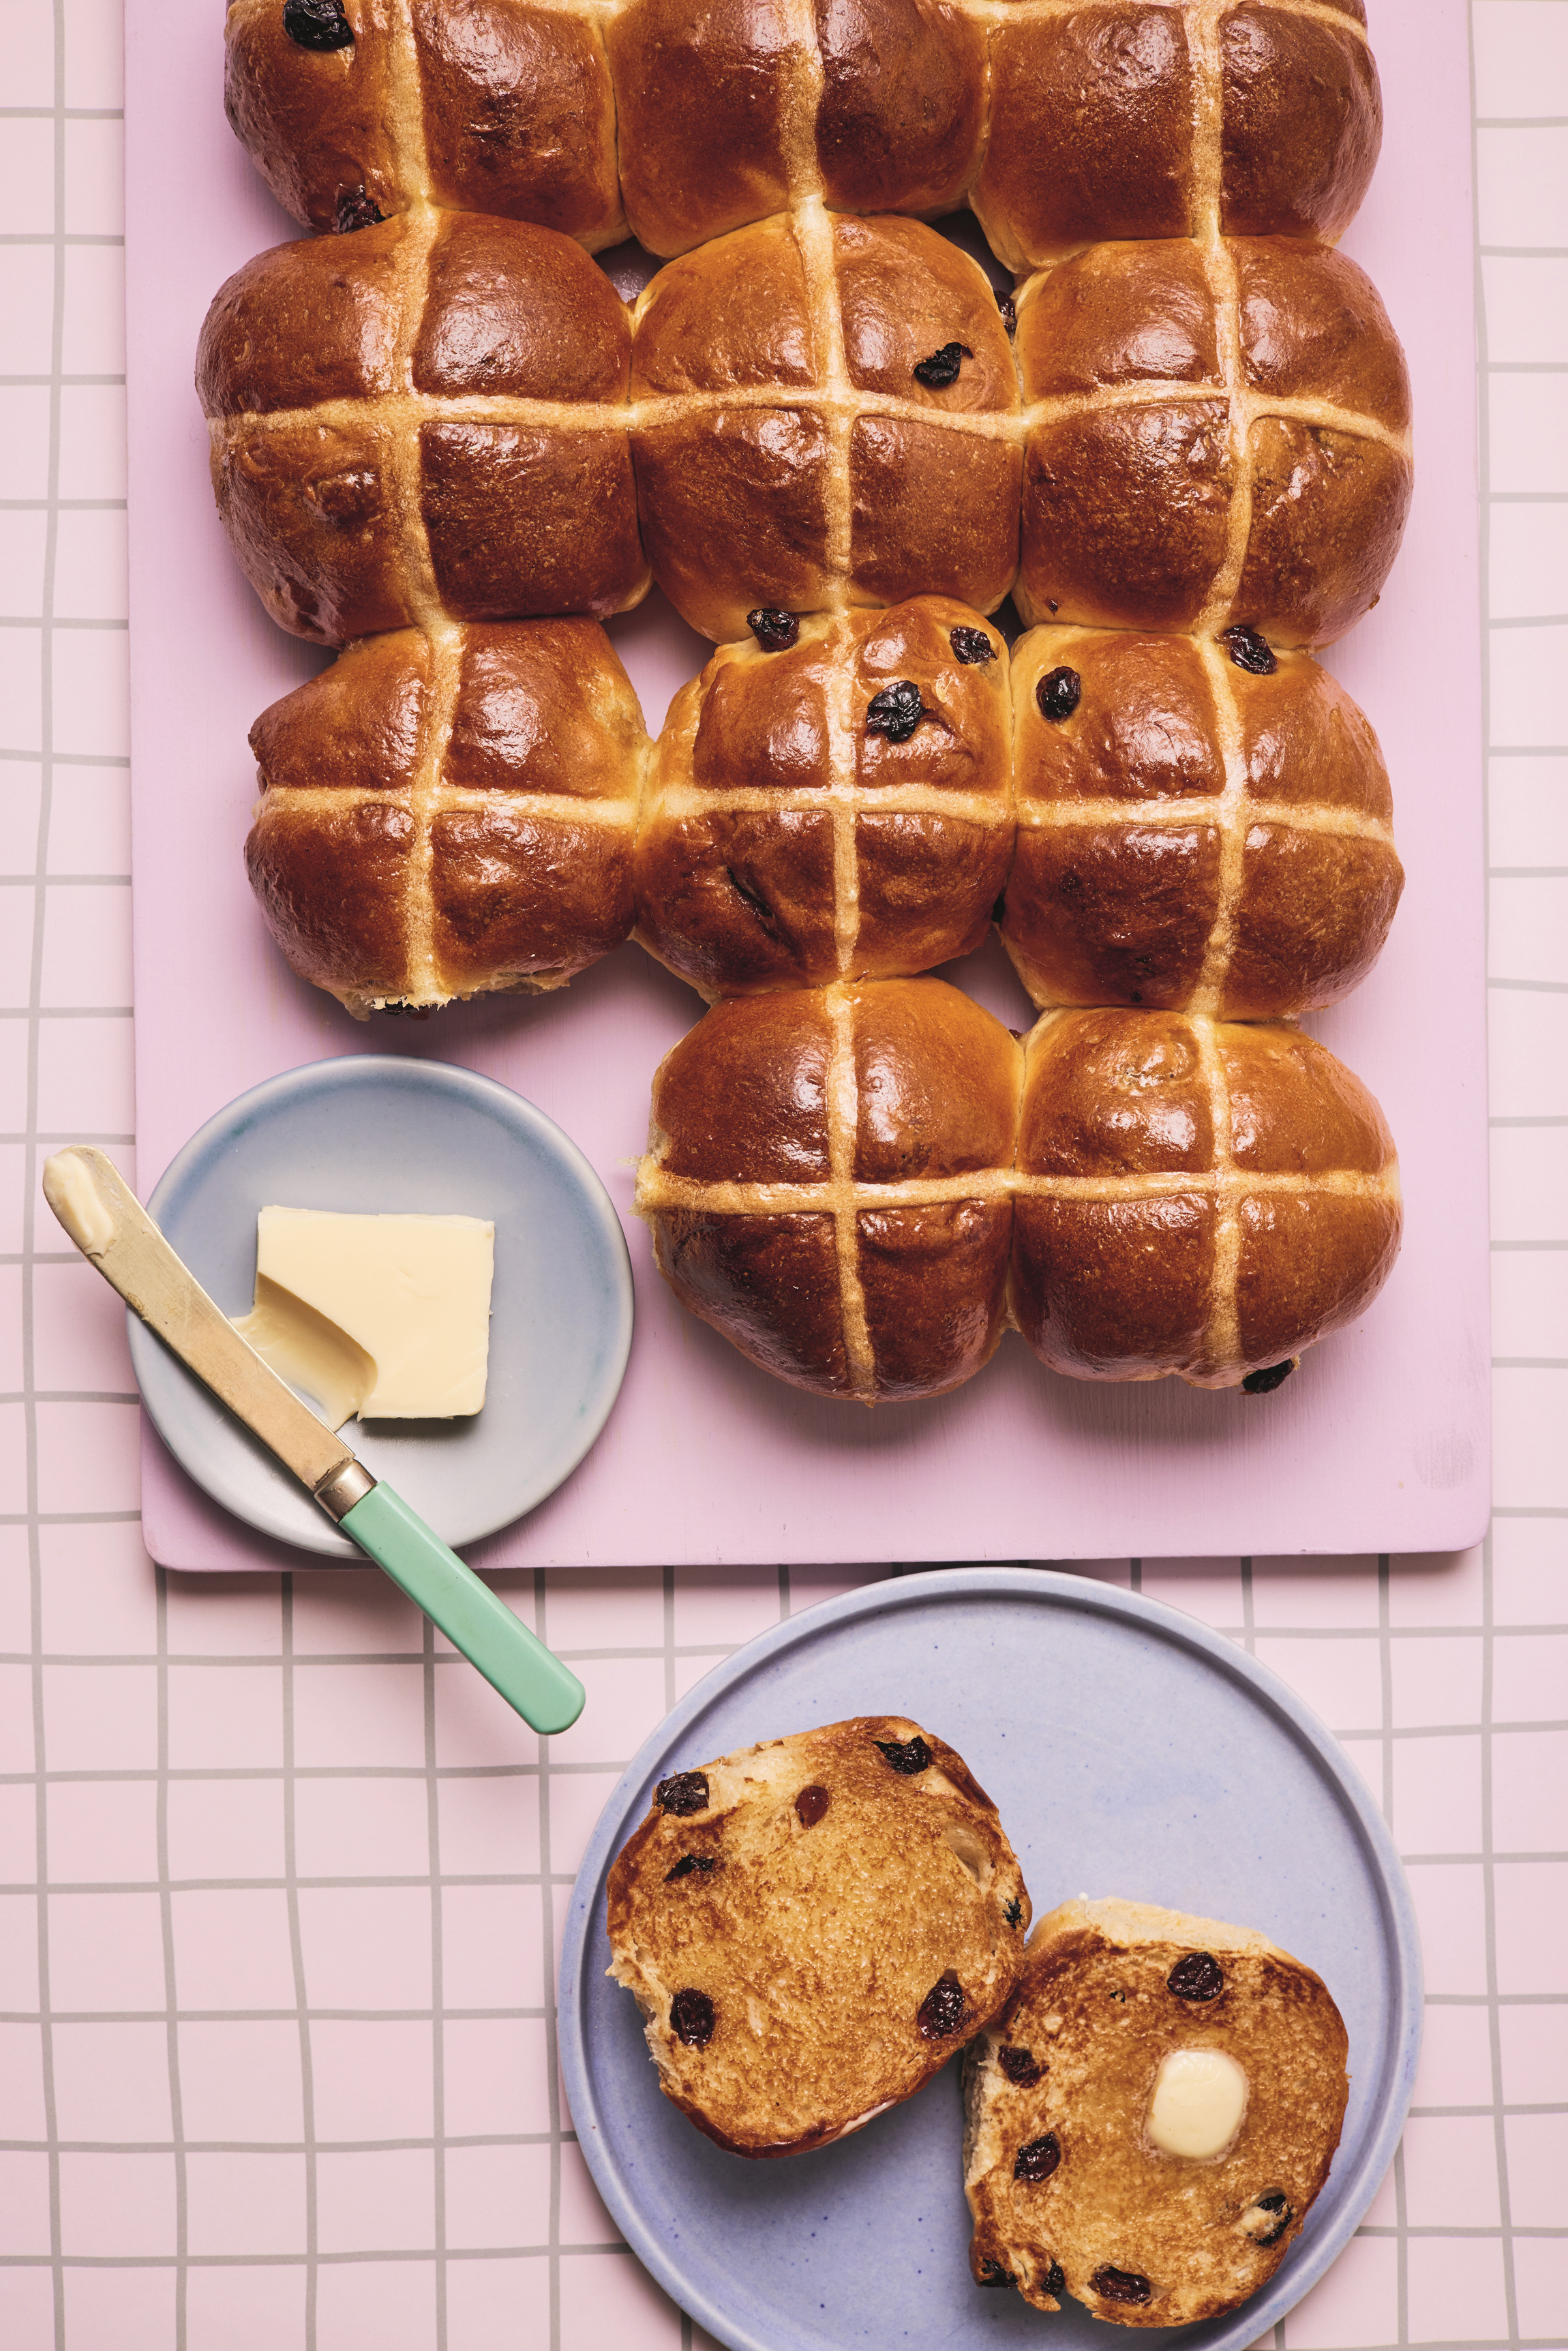 Hot cross buns by Jane Dunn